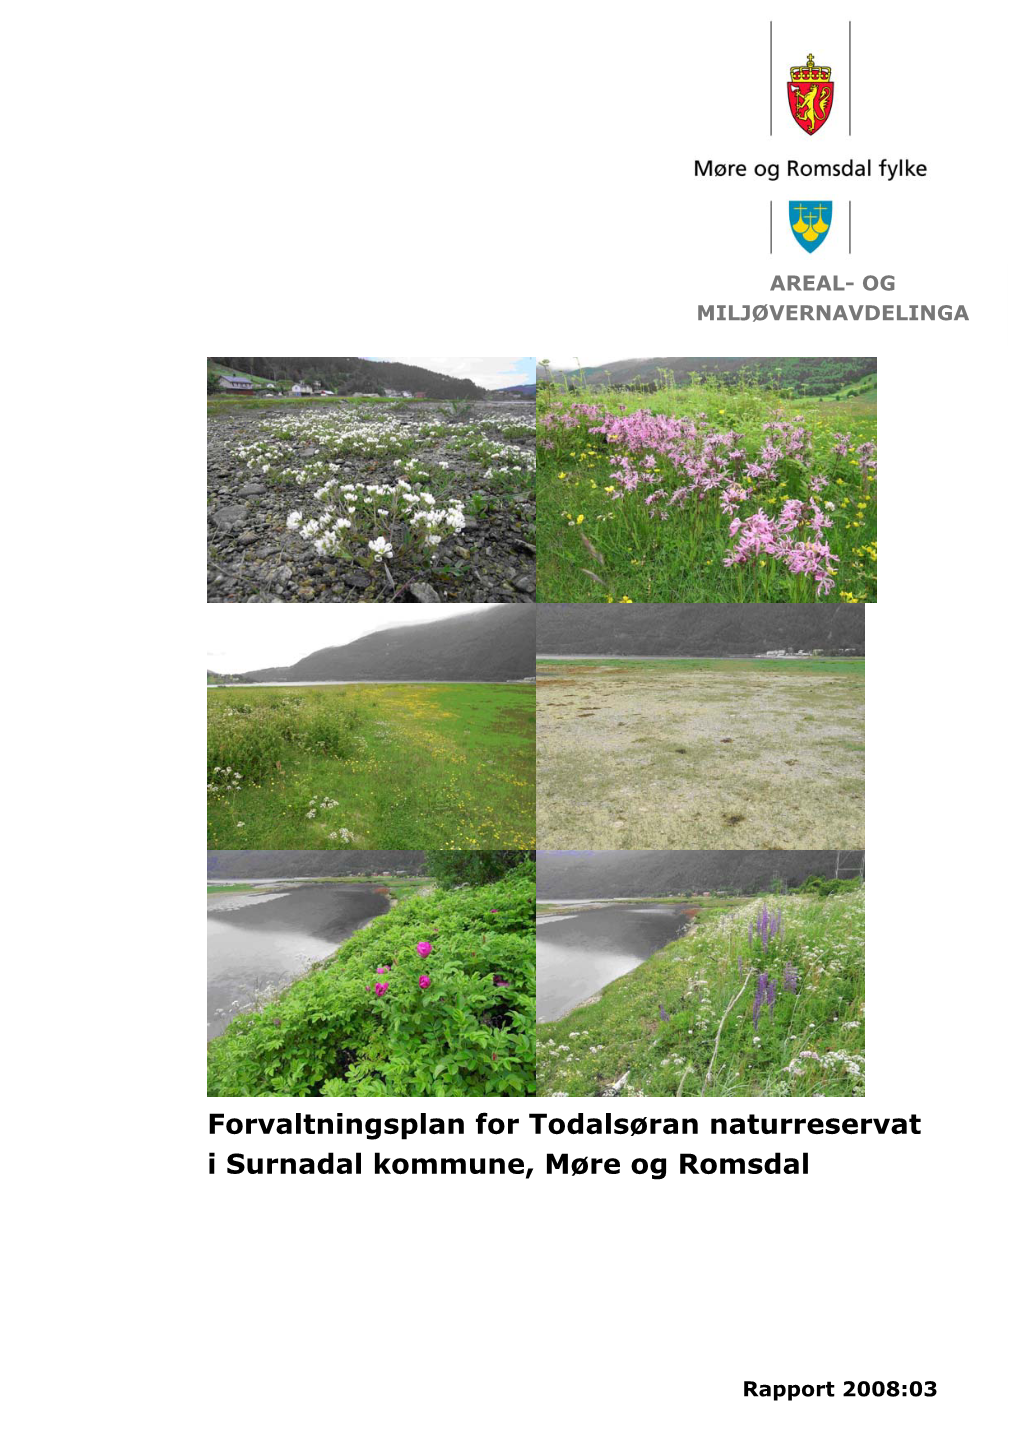 Forvaltningsplan for Todalsøran Naturreservat I Surnadal Kommune, Møre Og Romsdal